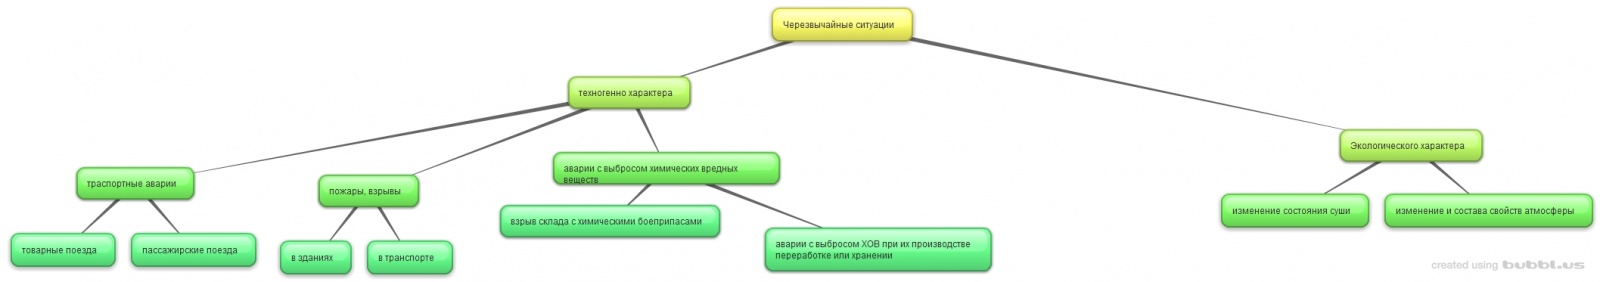 Схема Жбанкова и Ложкина.jpg